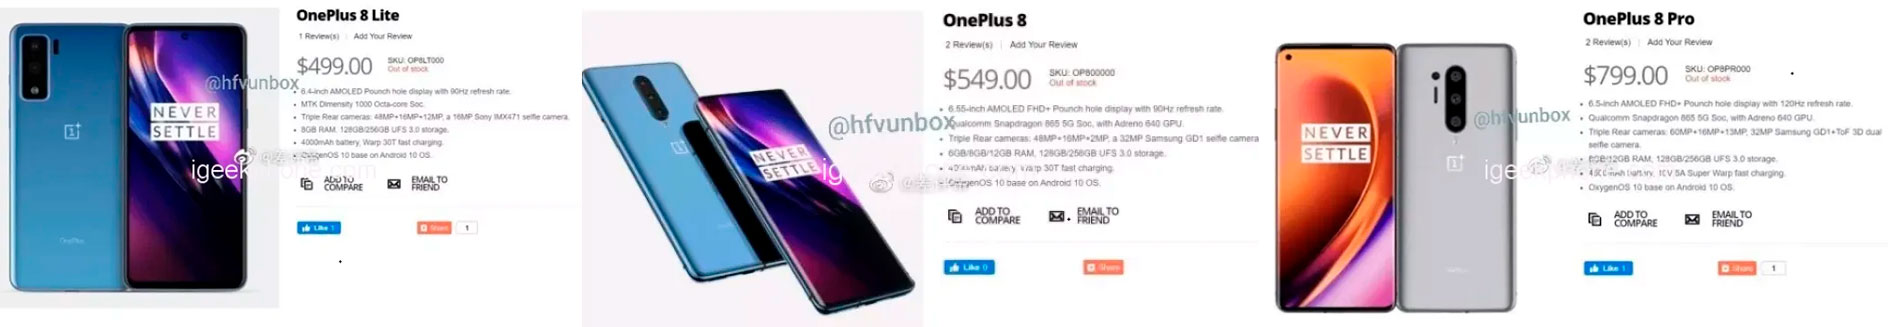 OnePlus 8 Prices